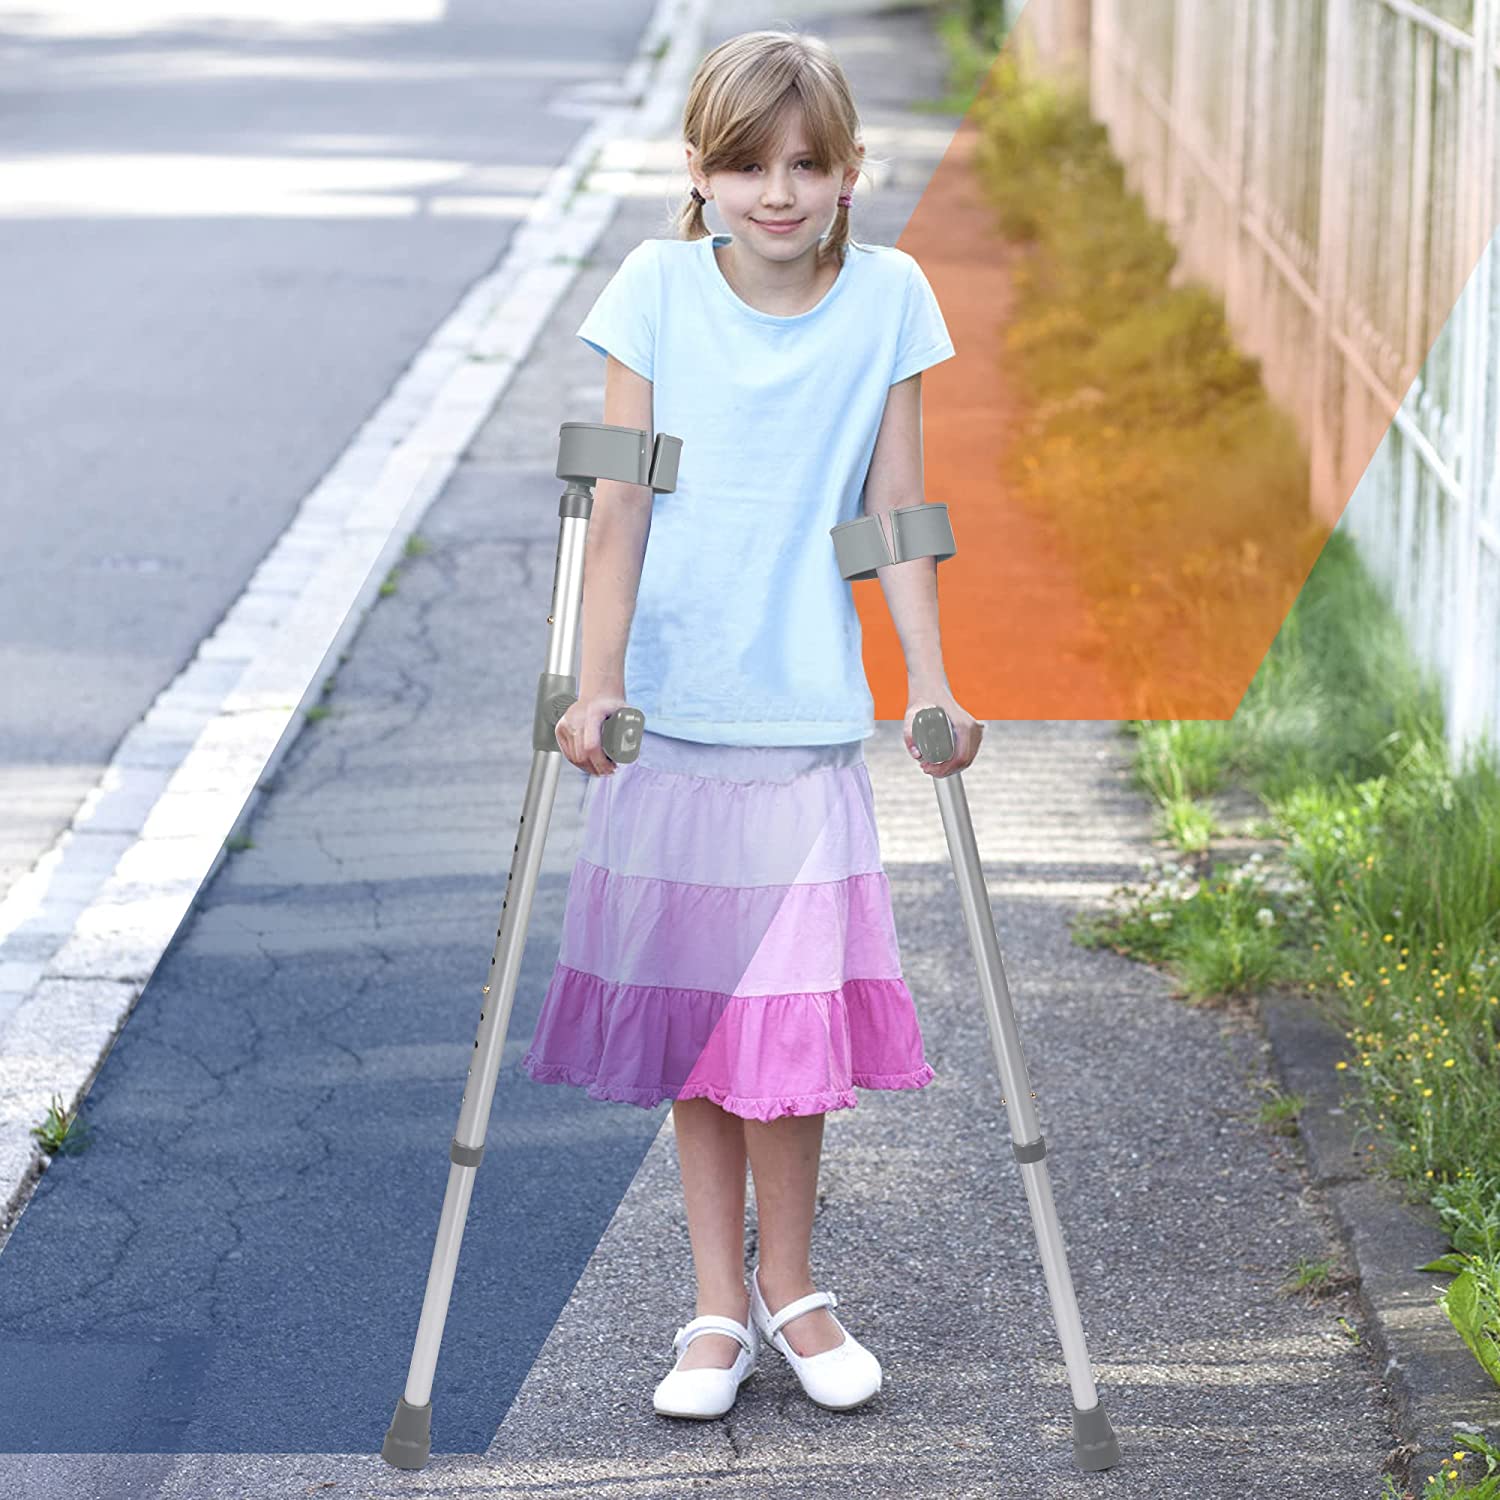 1 Pair of Aluminum Alloy Rehabilitation Crutches with Ergonomic Handles